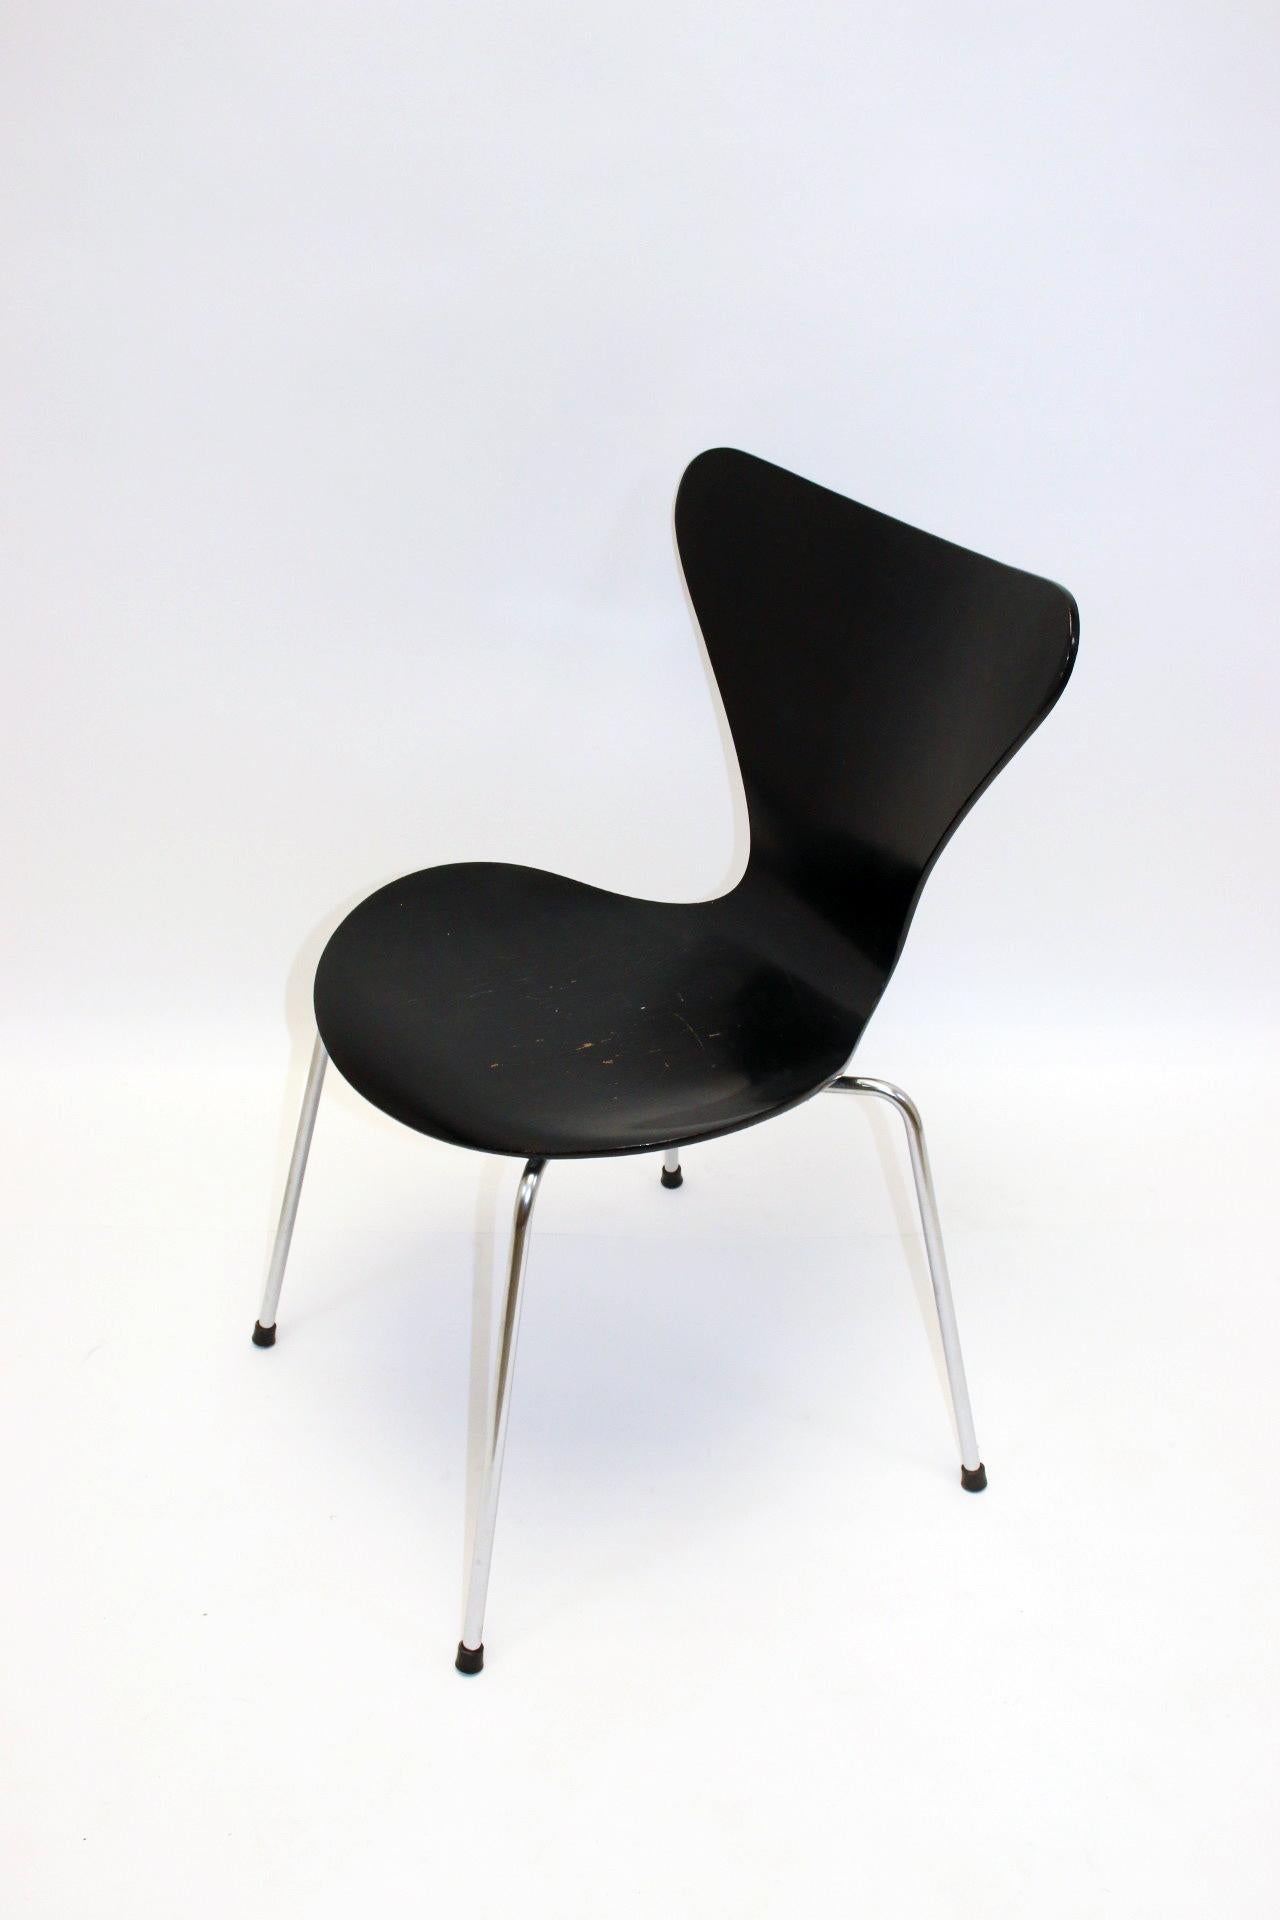 Magnifique chaise de la plus célèbre chaise d'Arne Jacobsen, modèle 3107, ou chaise papillon. Il s'agit d'une des premières chaises commercialisées entre 1955 et 1963. Les capuchons métalliques d'origine sont également présents au fond. La chaise